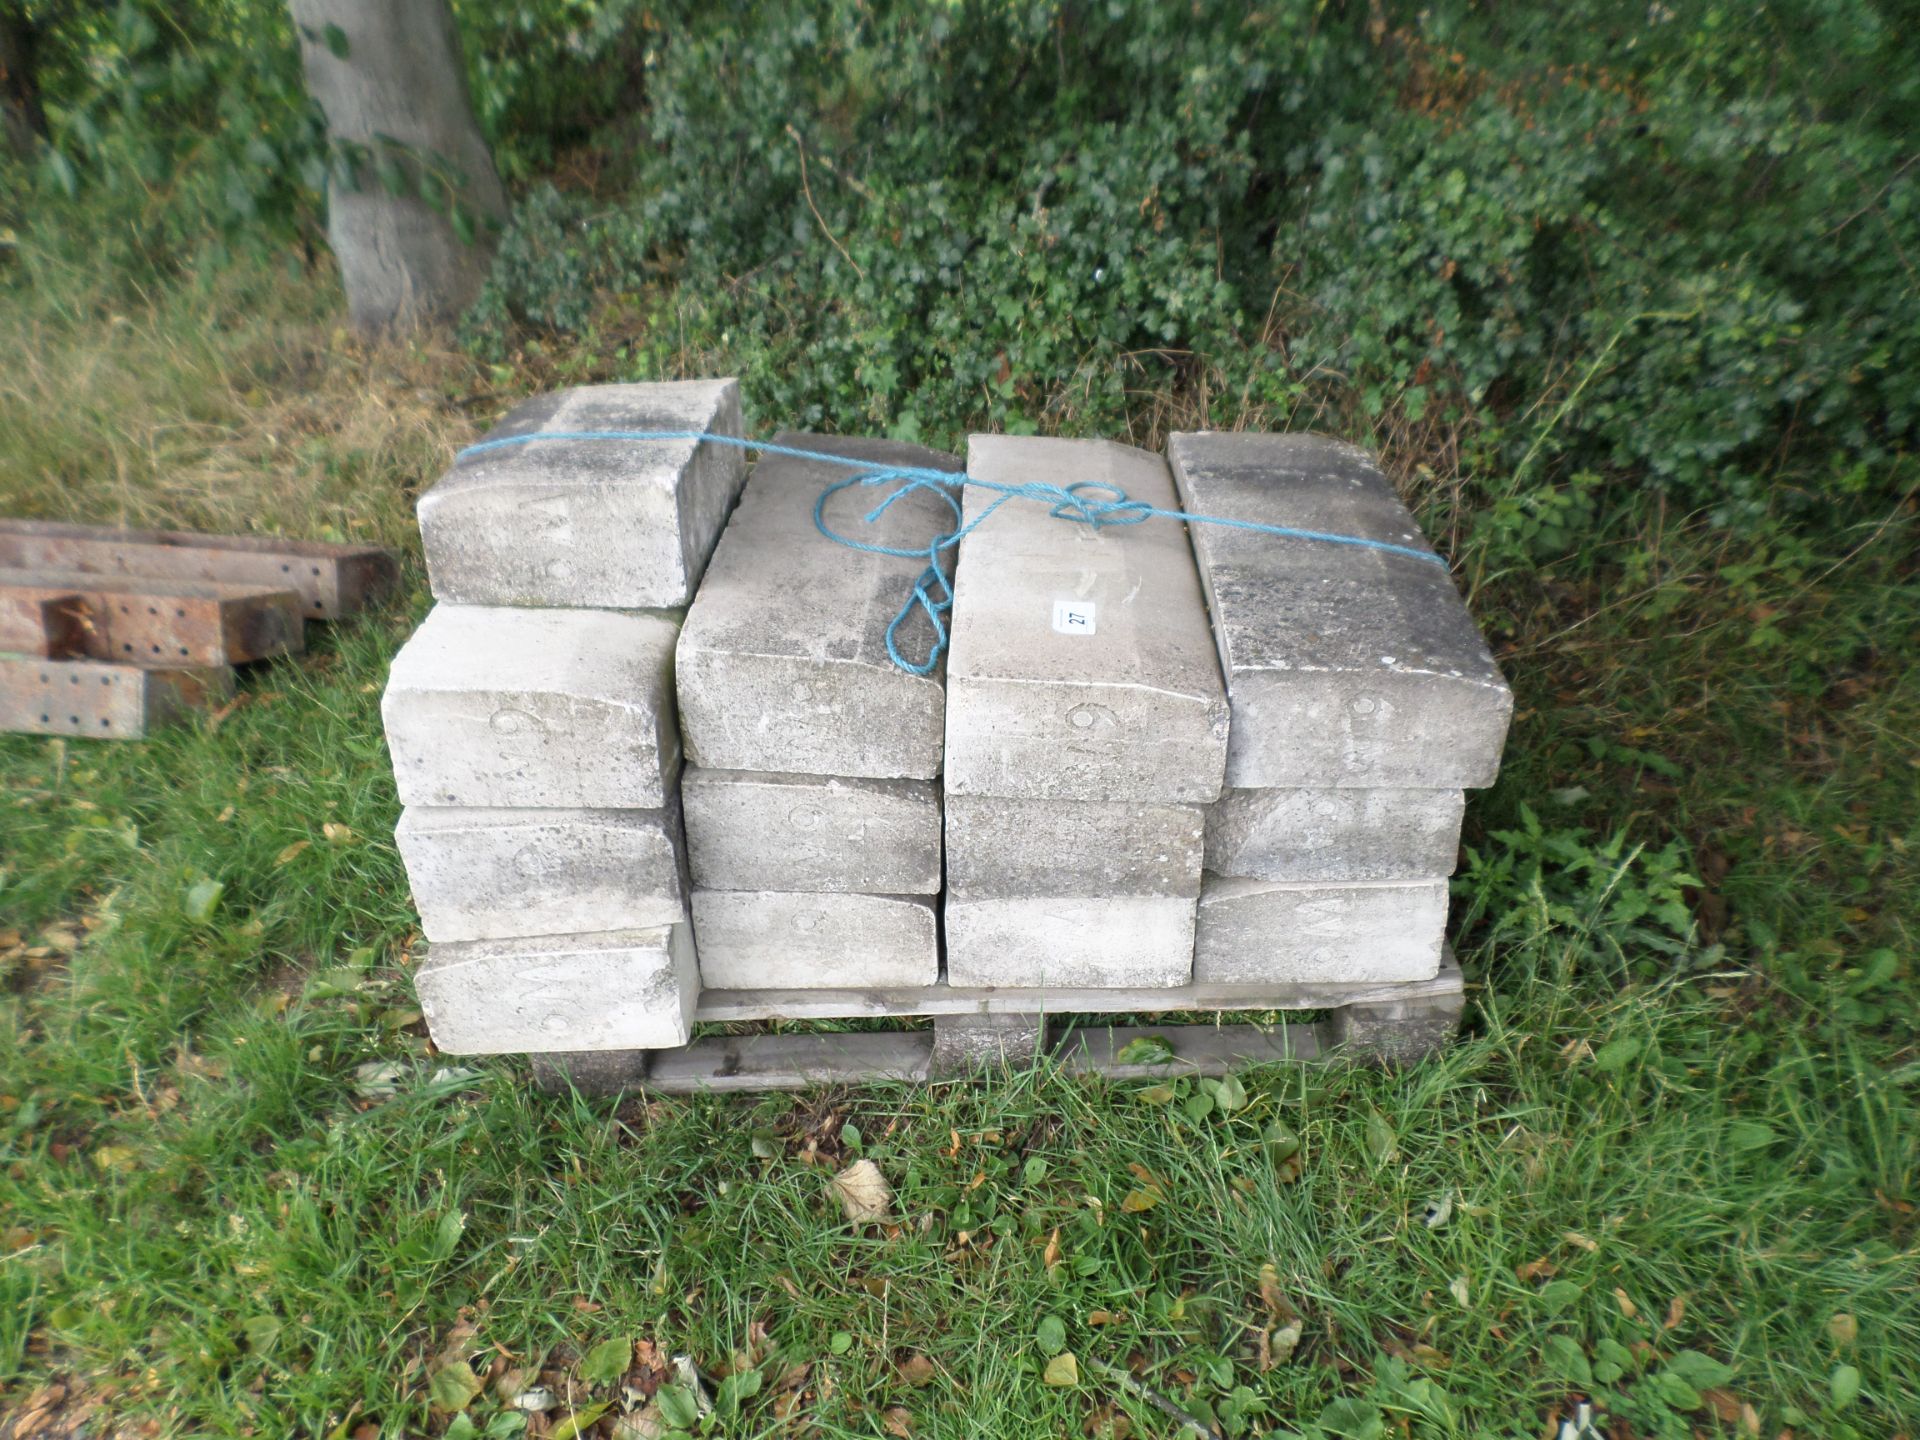 Pack of kerb stones